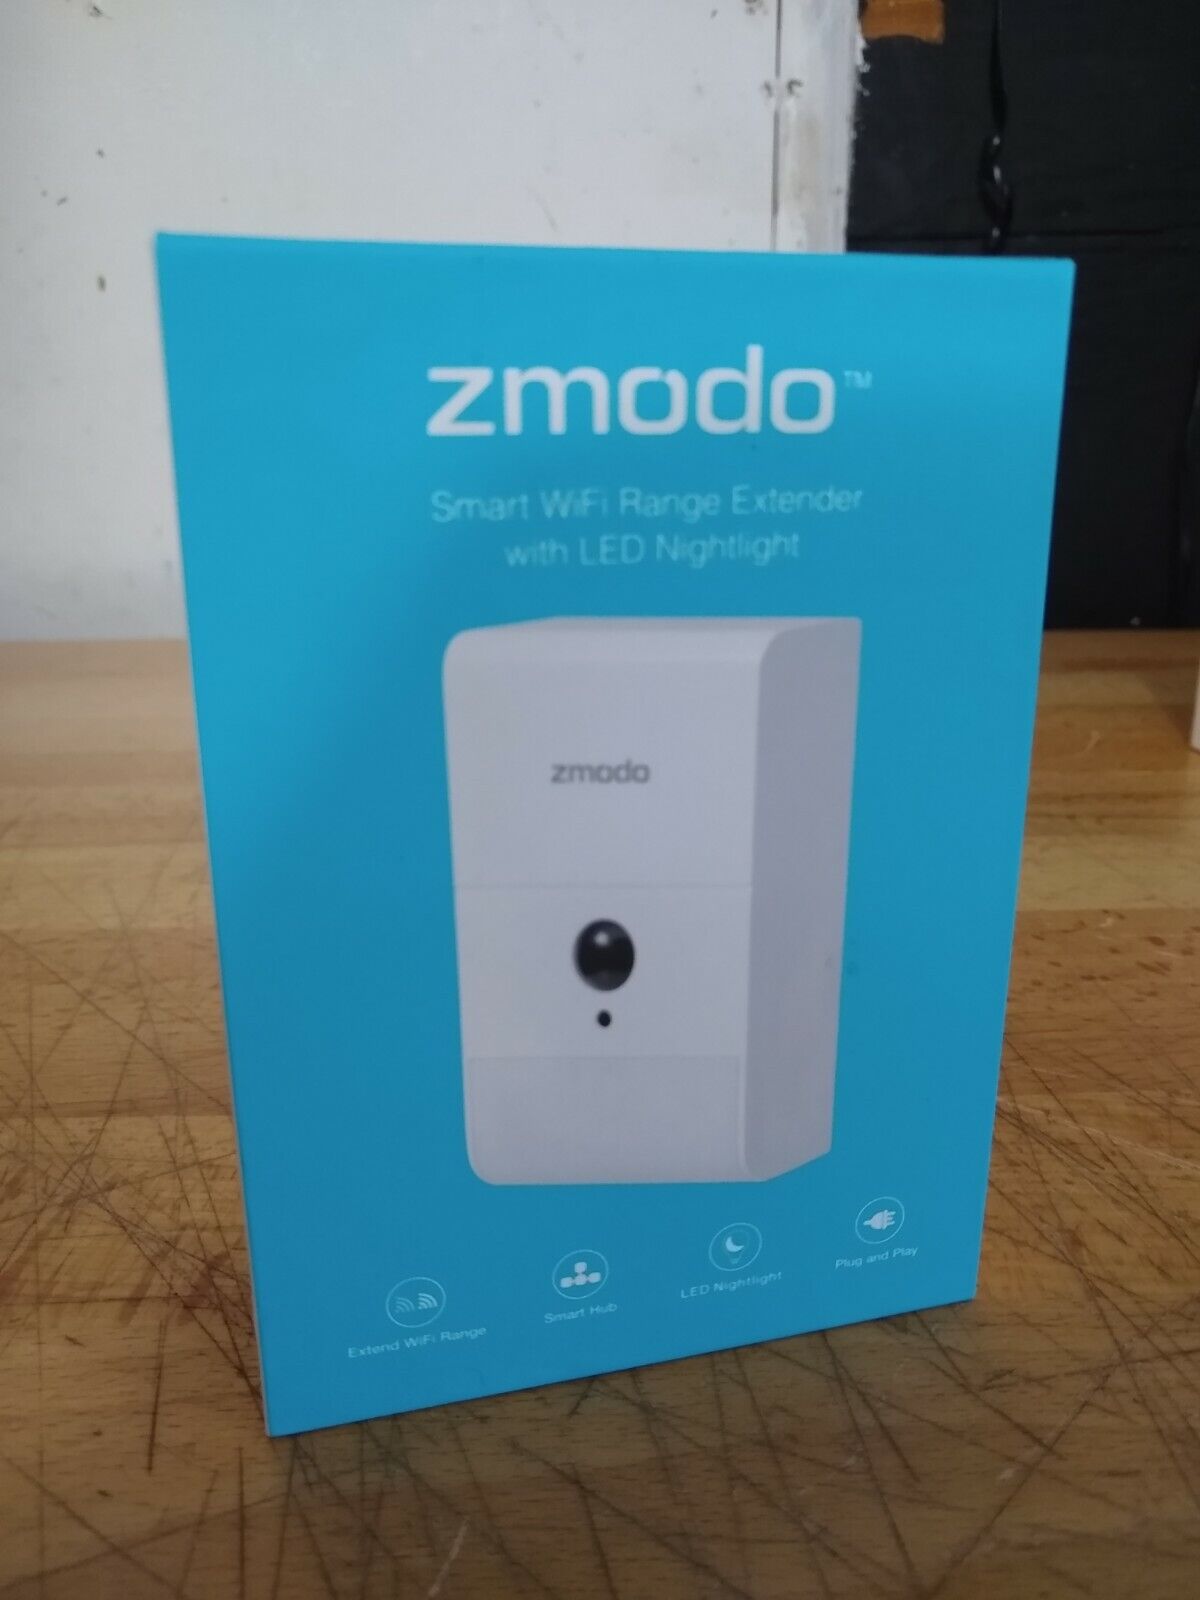 Zmodo ZM-SHRZ01W Smart WiFi Range Extender with LED Nightlight 